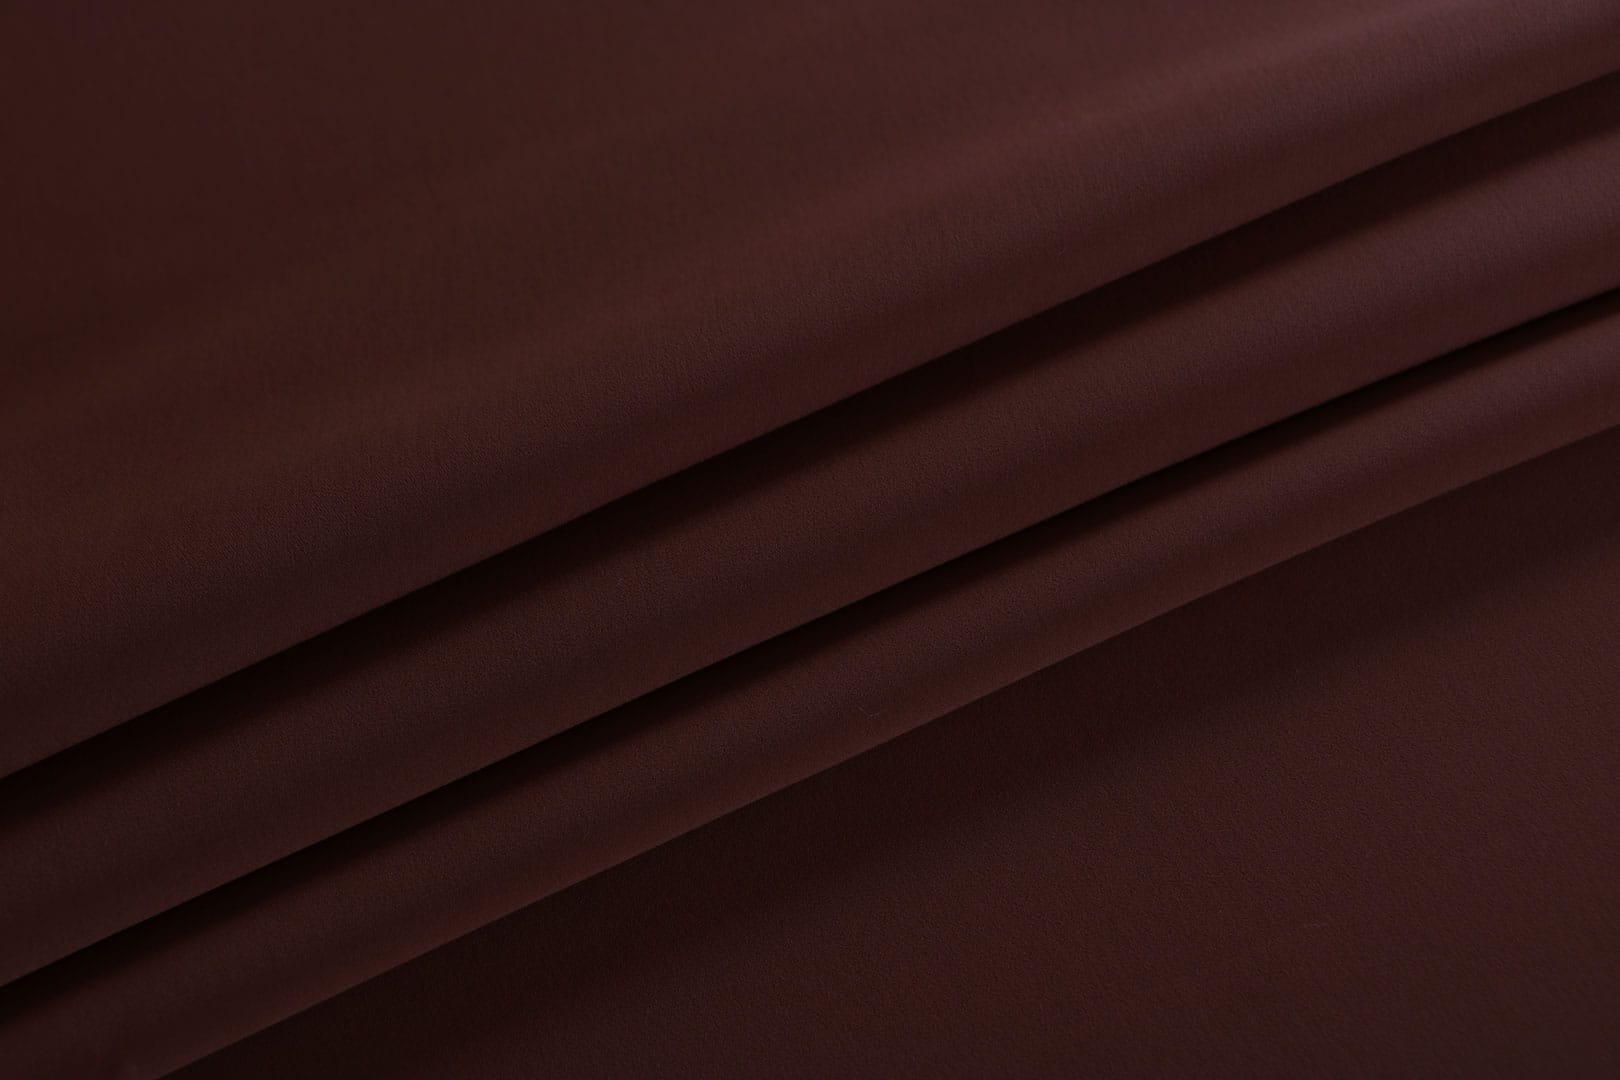 Tissu Microfibre lourde Marron Cacao en Polyester pour vêtements